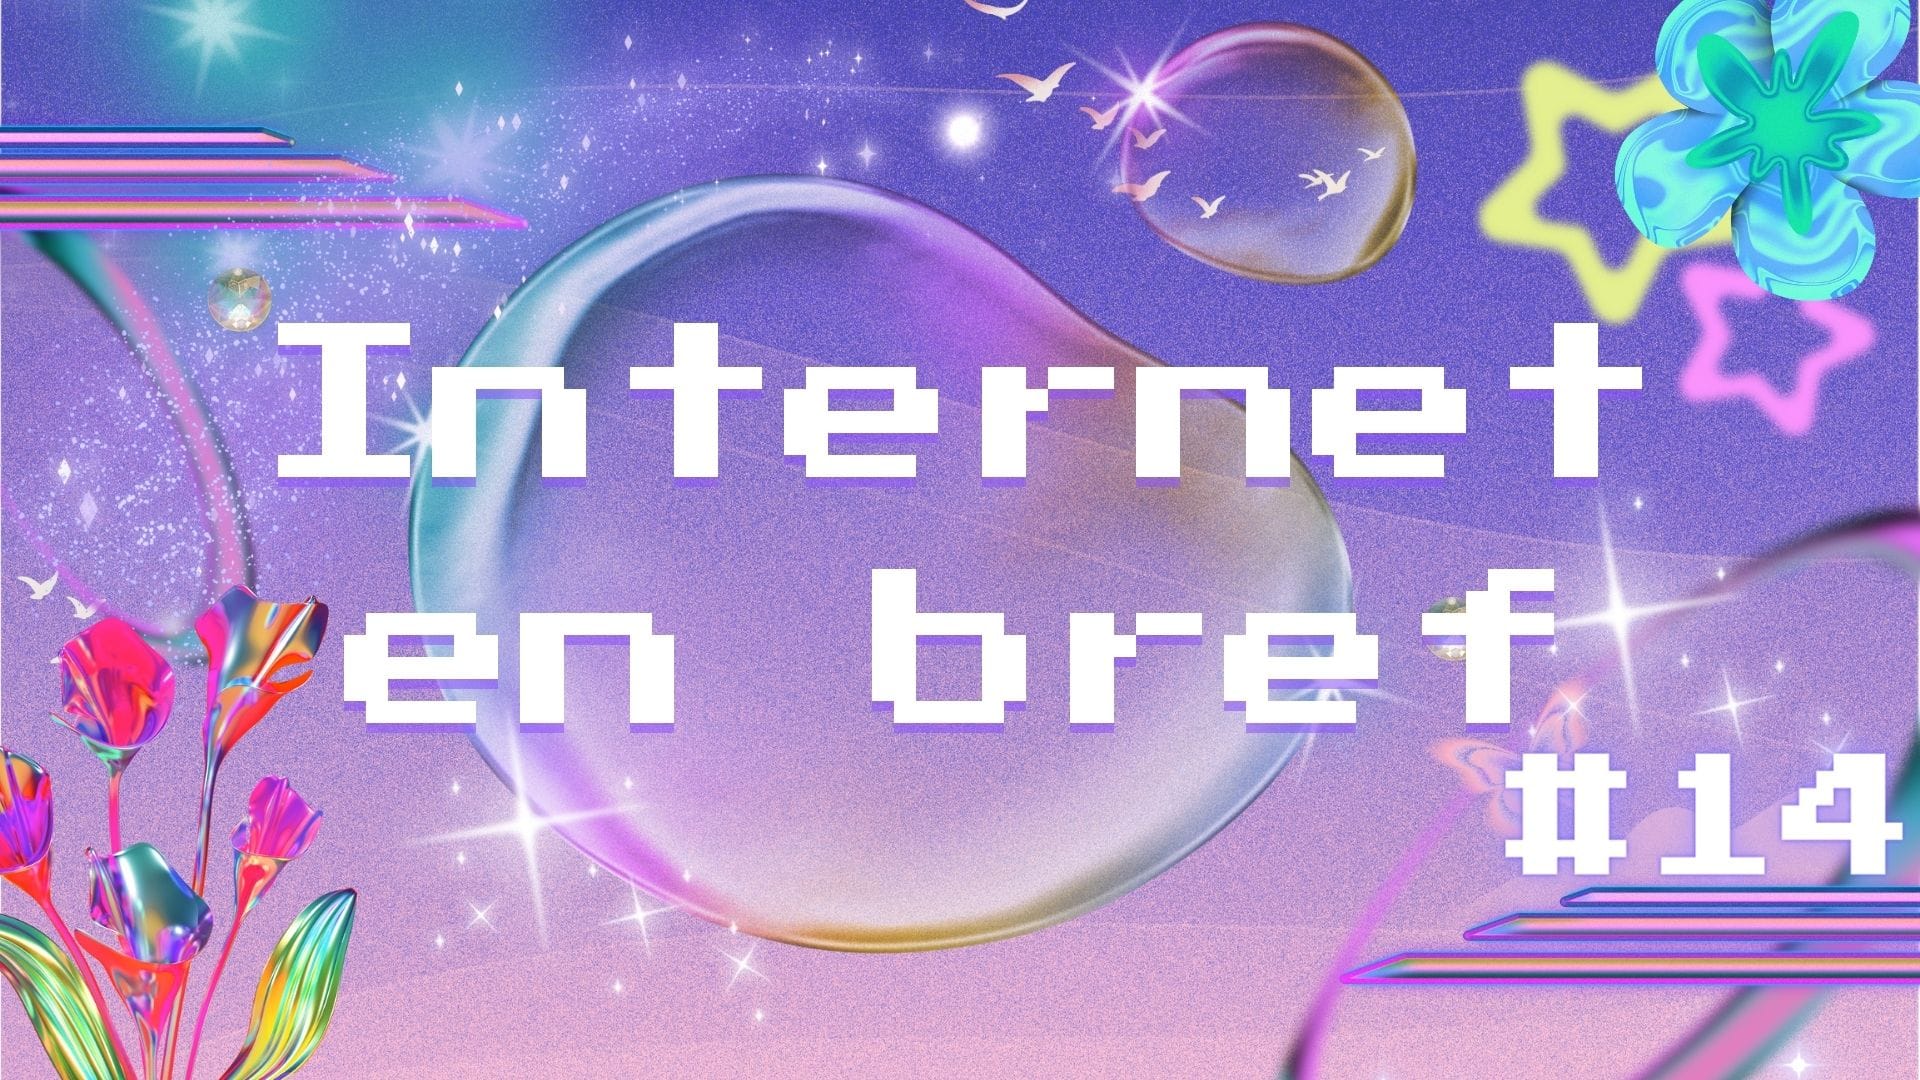 Internet en Bref #14 - Travail, Fausses pubs & Everest